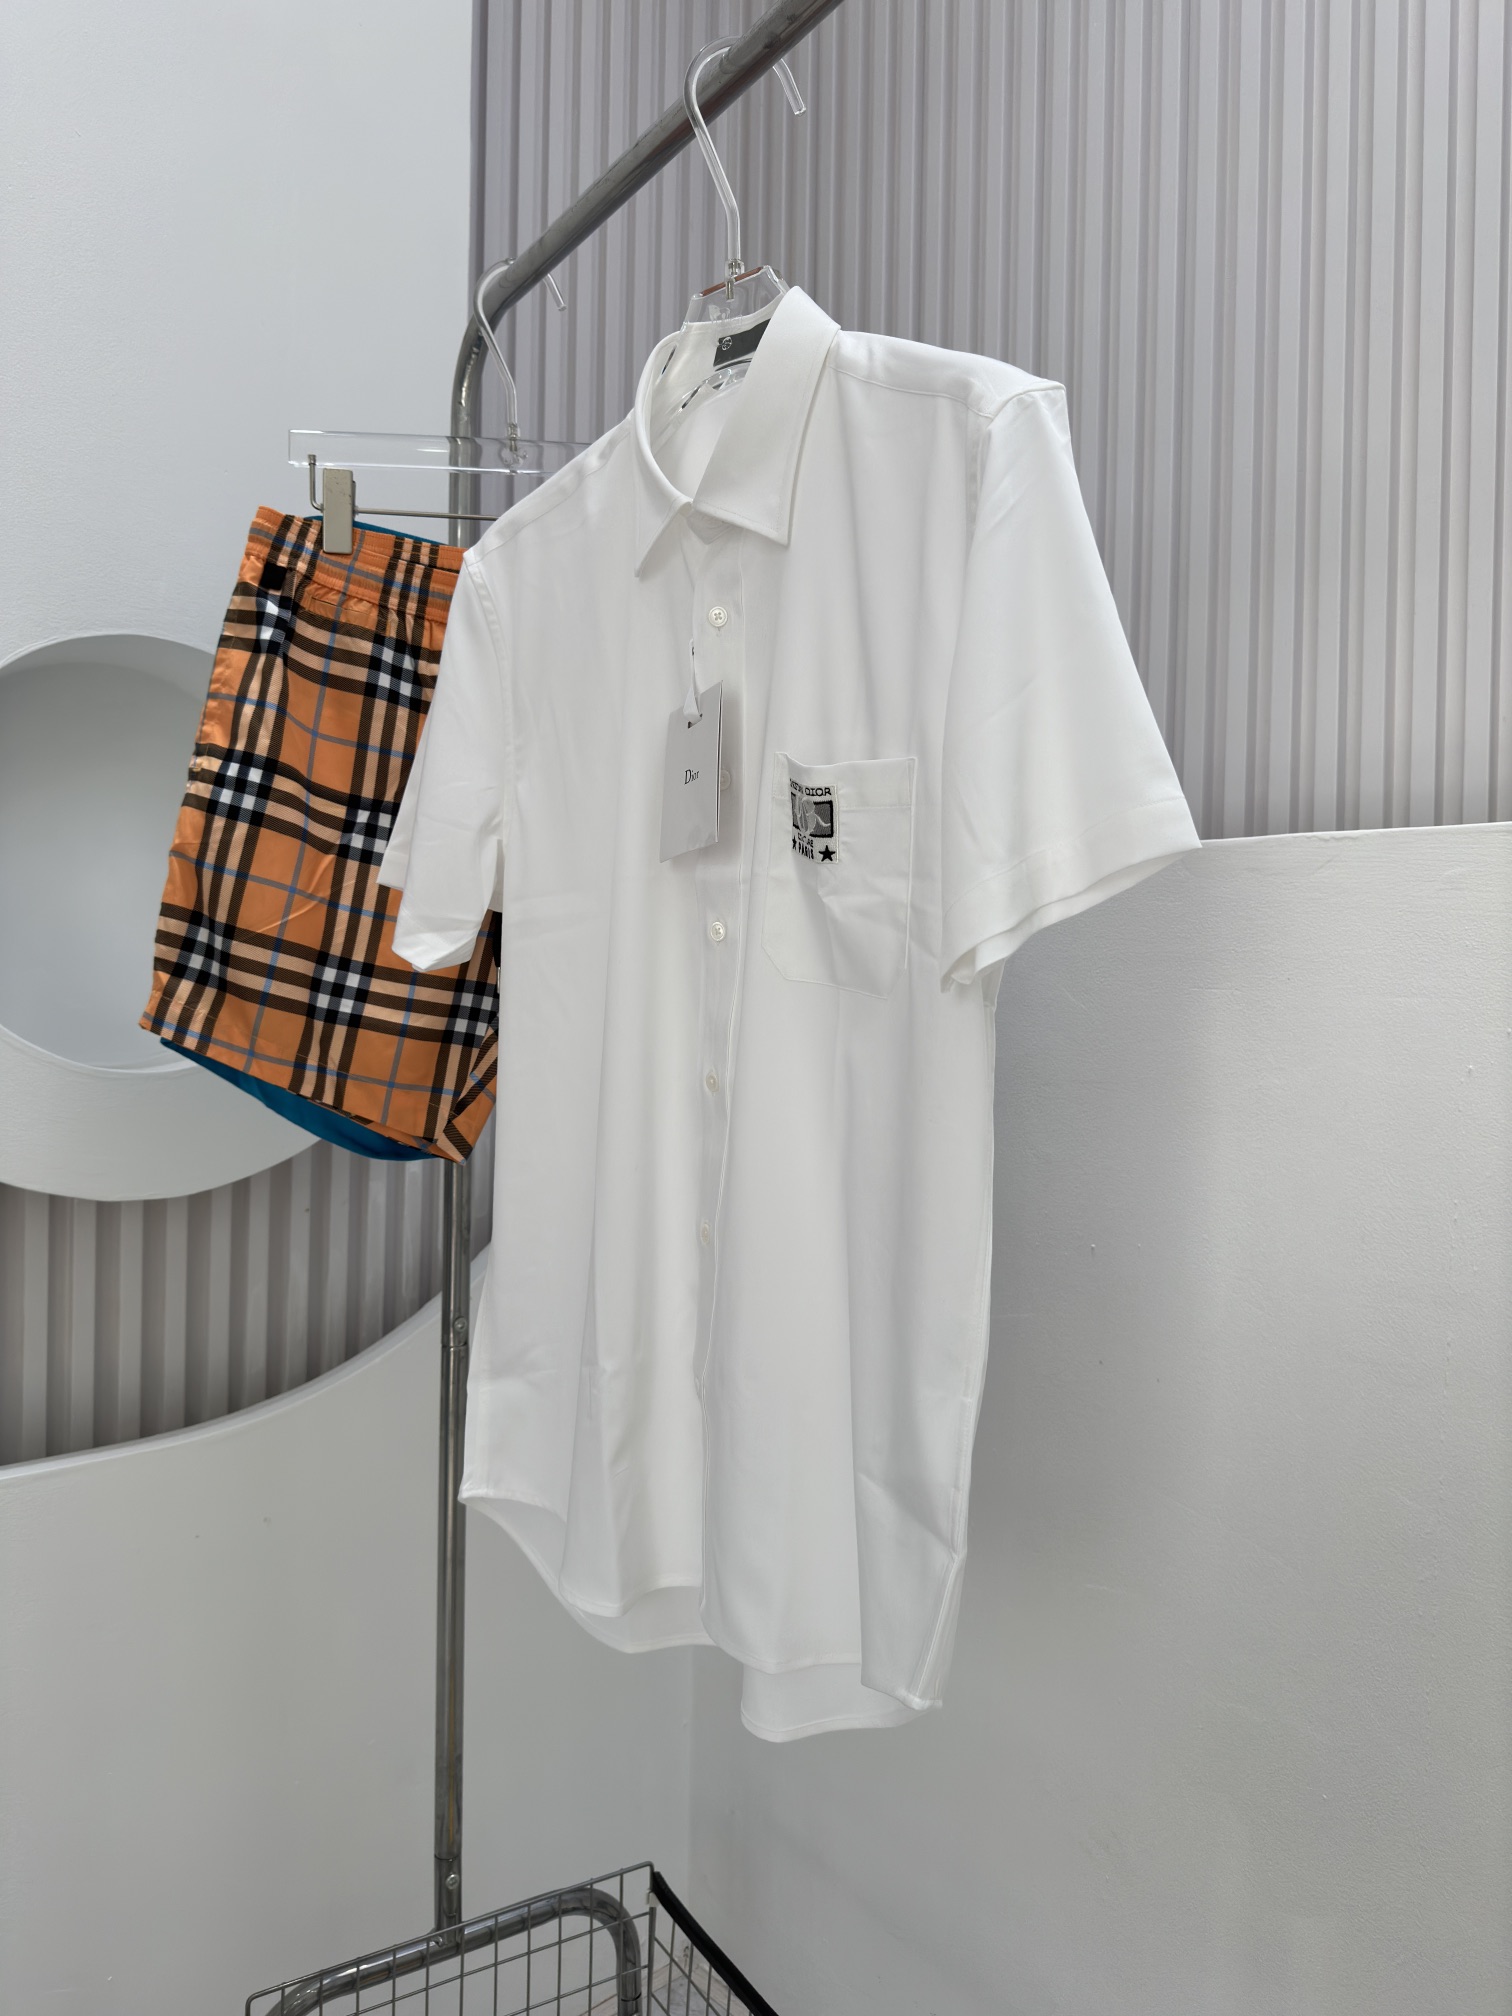 Dio24ss春夏新款短袖衬衫饰以DioCharm机织标签突显经典的Dio标志采用白色棉和蚕丝混纺面料精